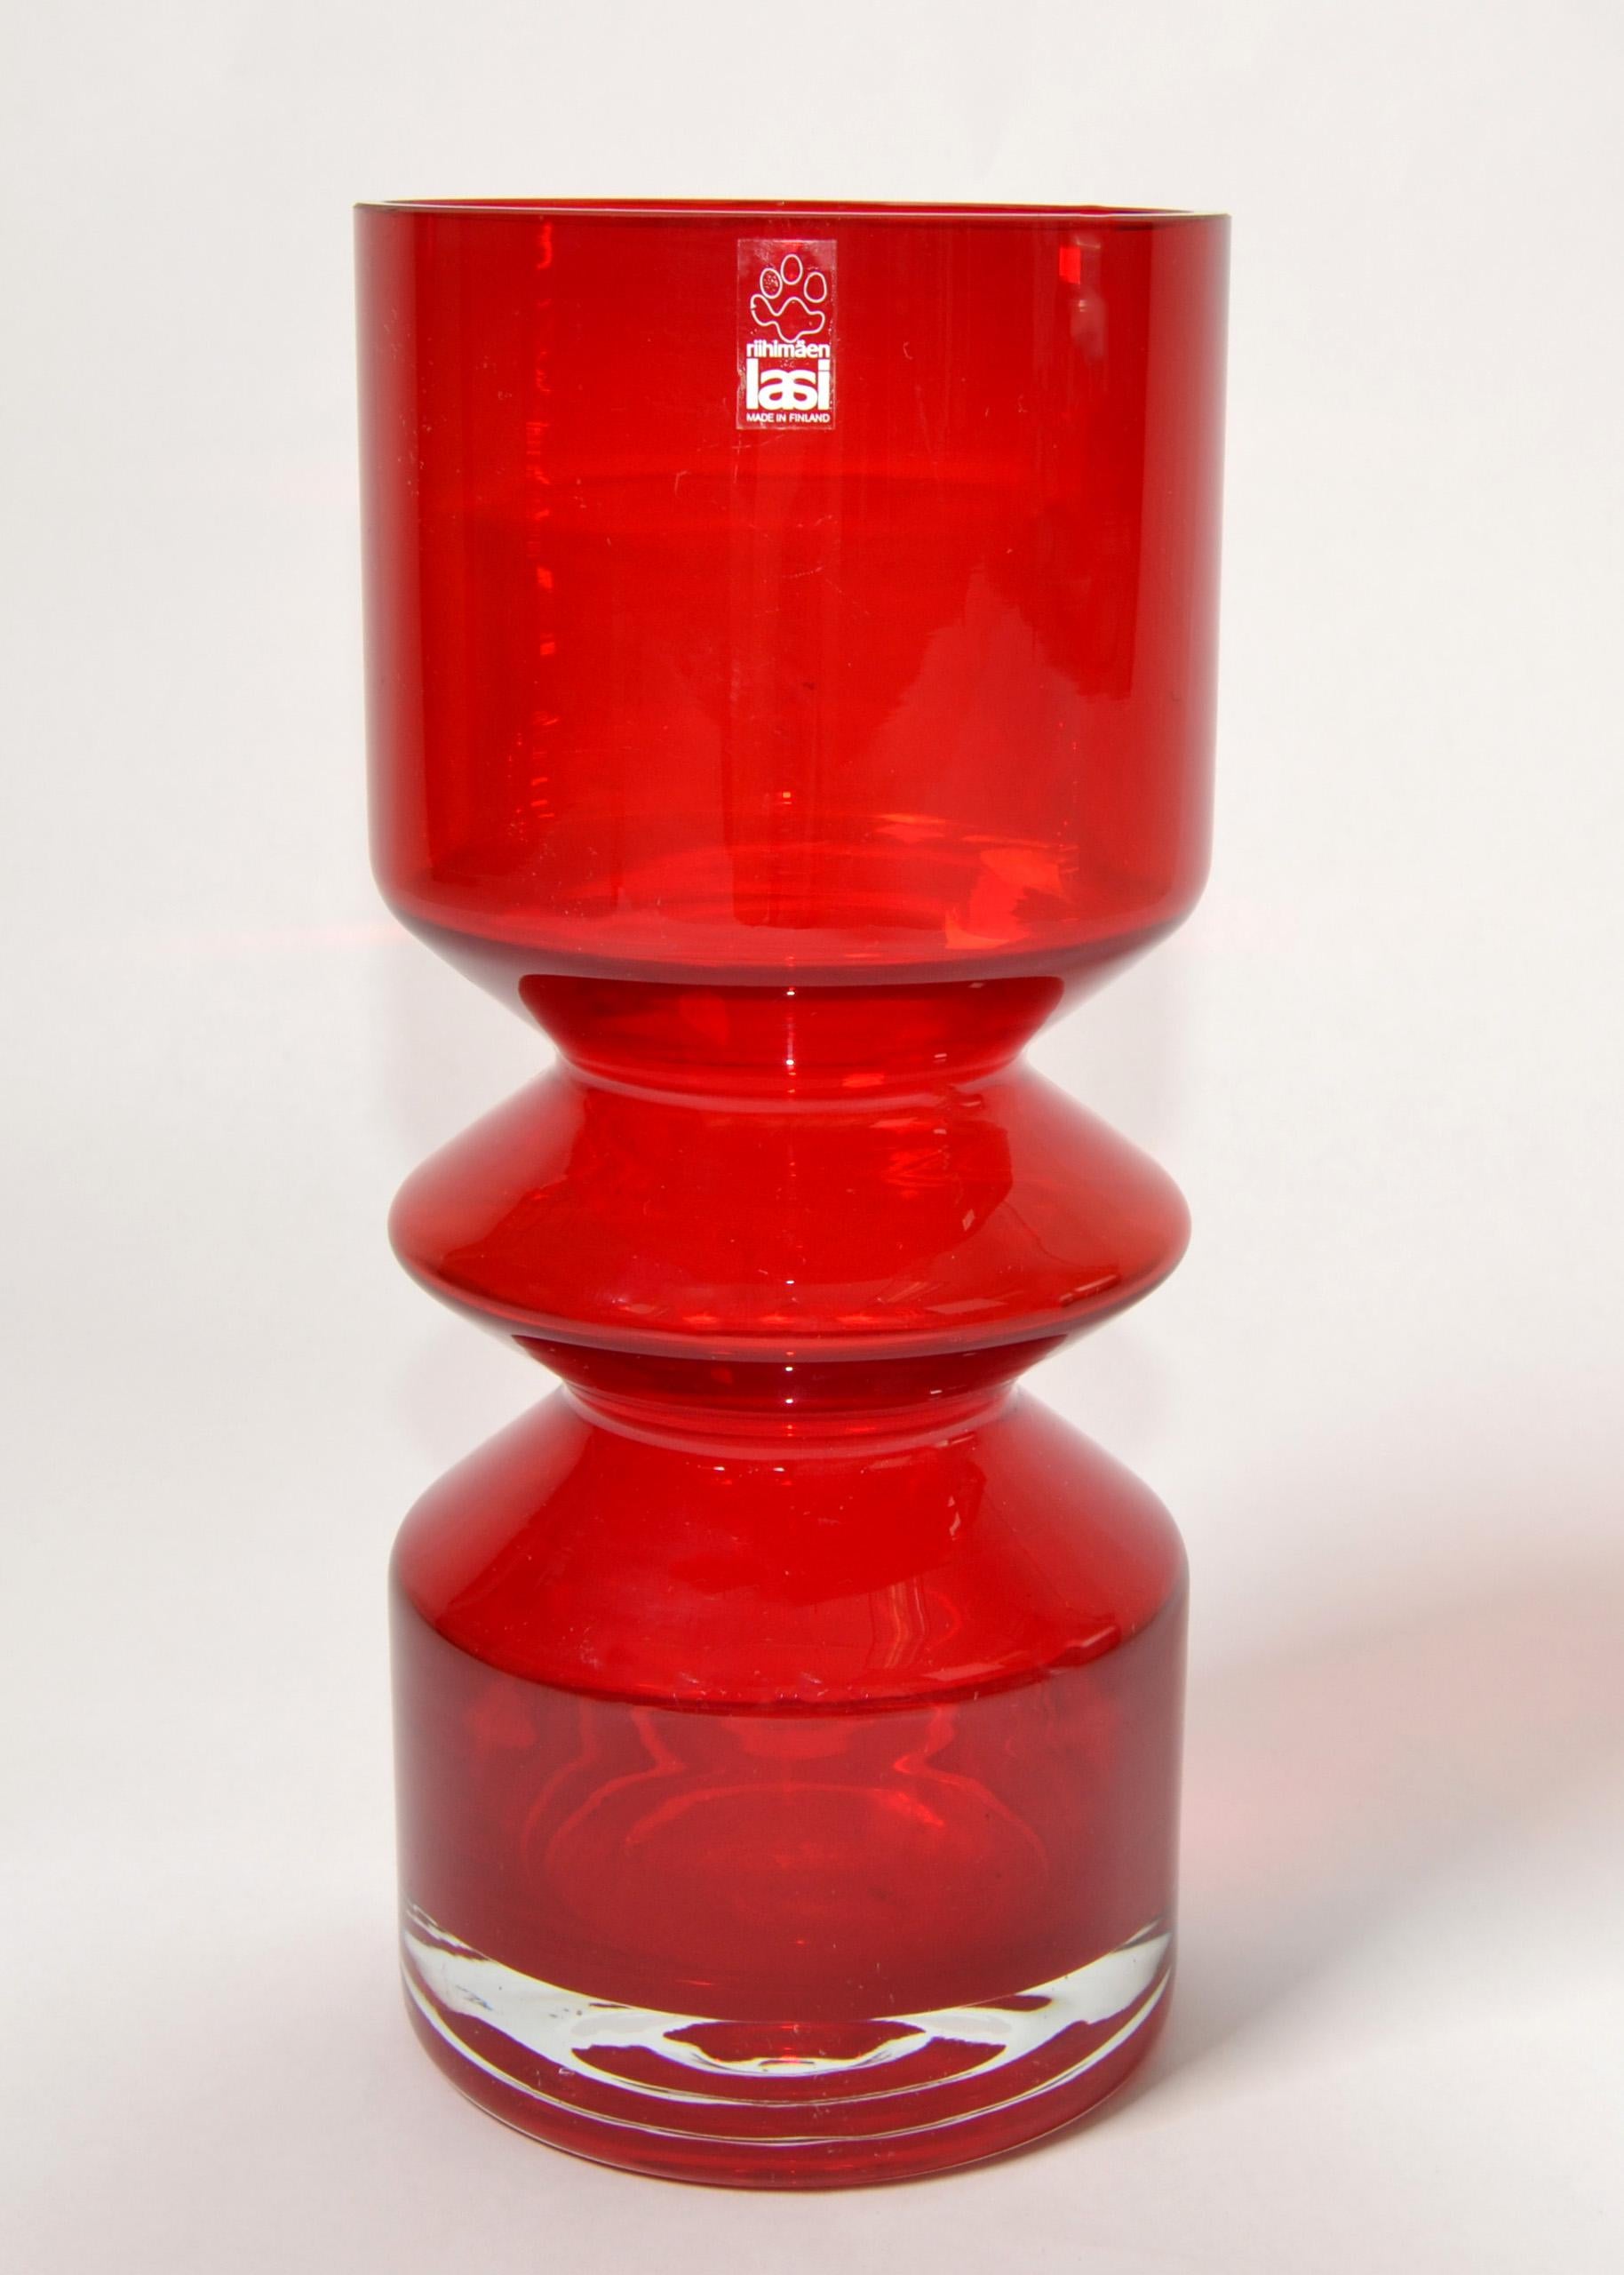 Vase en verre d'art soufflé Tamara Aladin des années 1960 pour Riihimaen Lasi Oy, Finlande.
En bon état vintage avec une usure mineure.
Label de la marque du fabricant au sommet du vase.
Un vase décoratif pour la table des fêtes ou une excellente